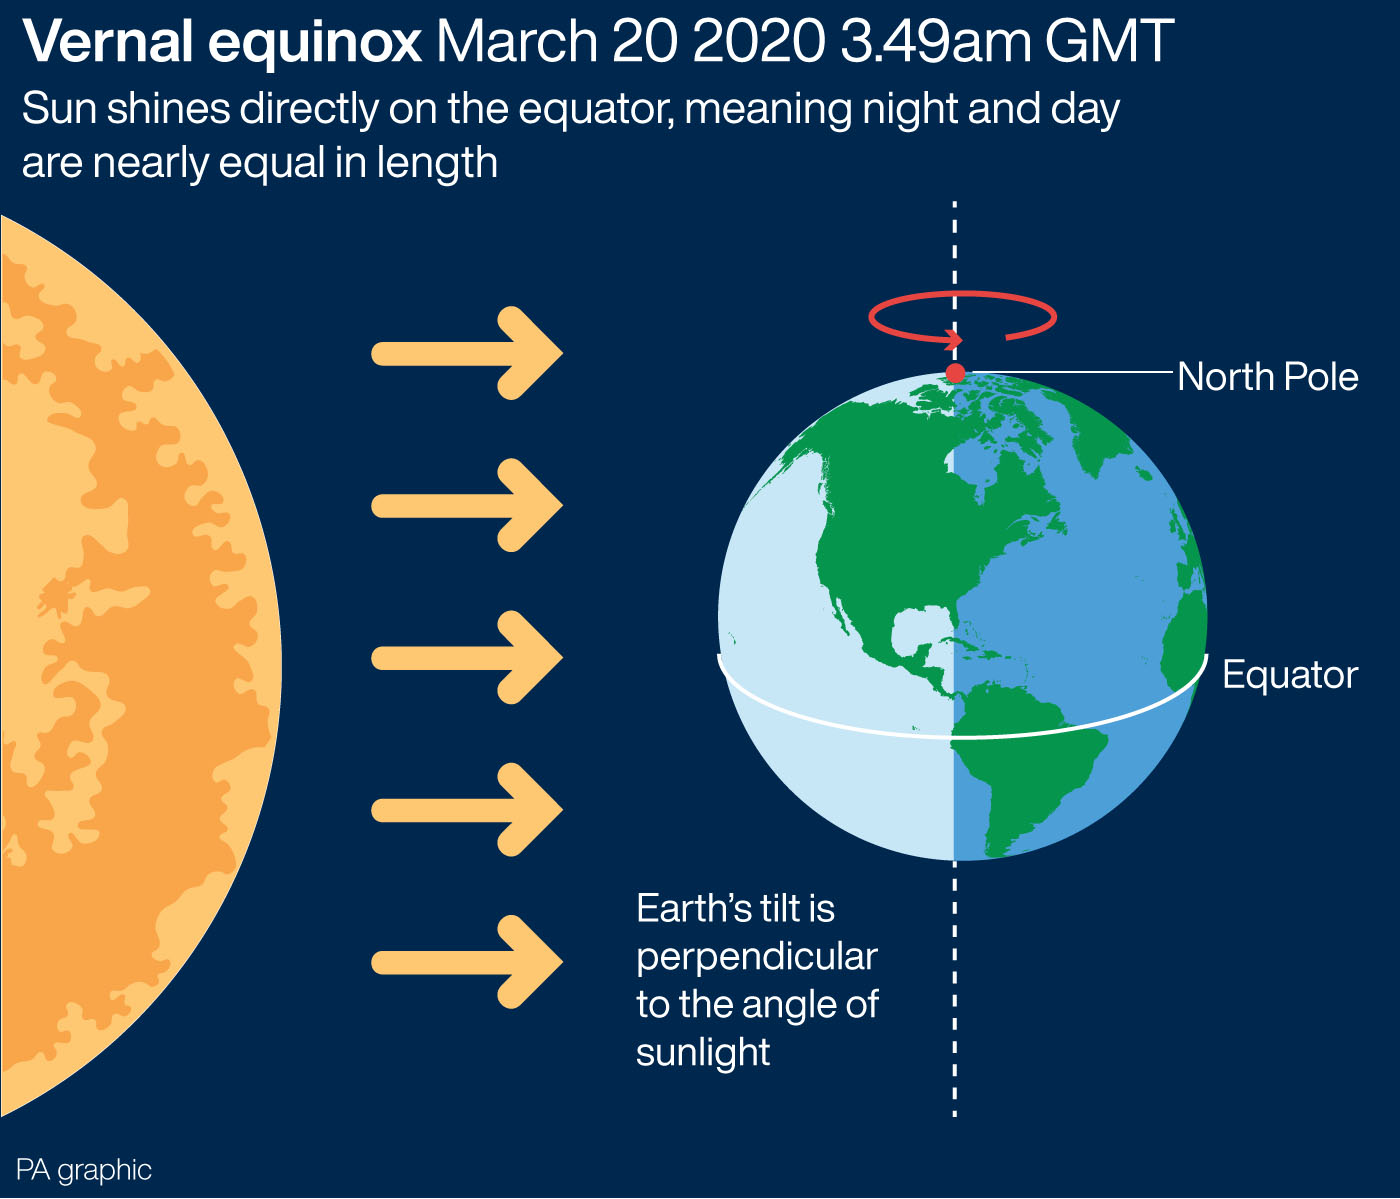 summer equinox solar radiation